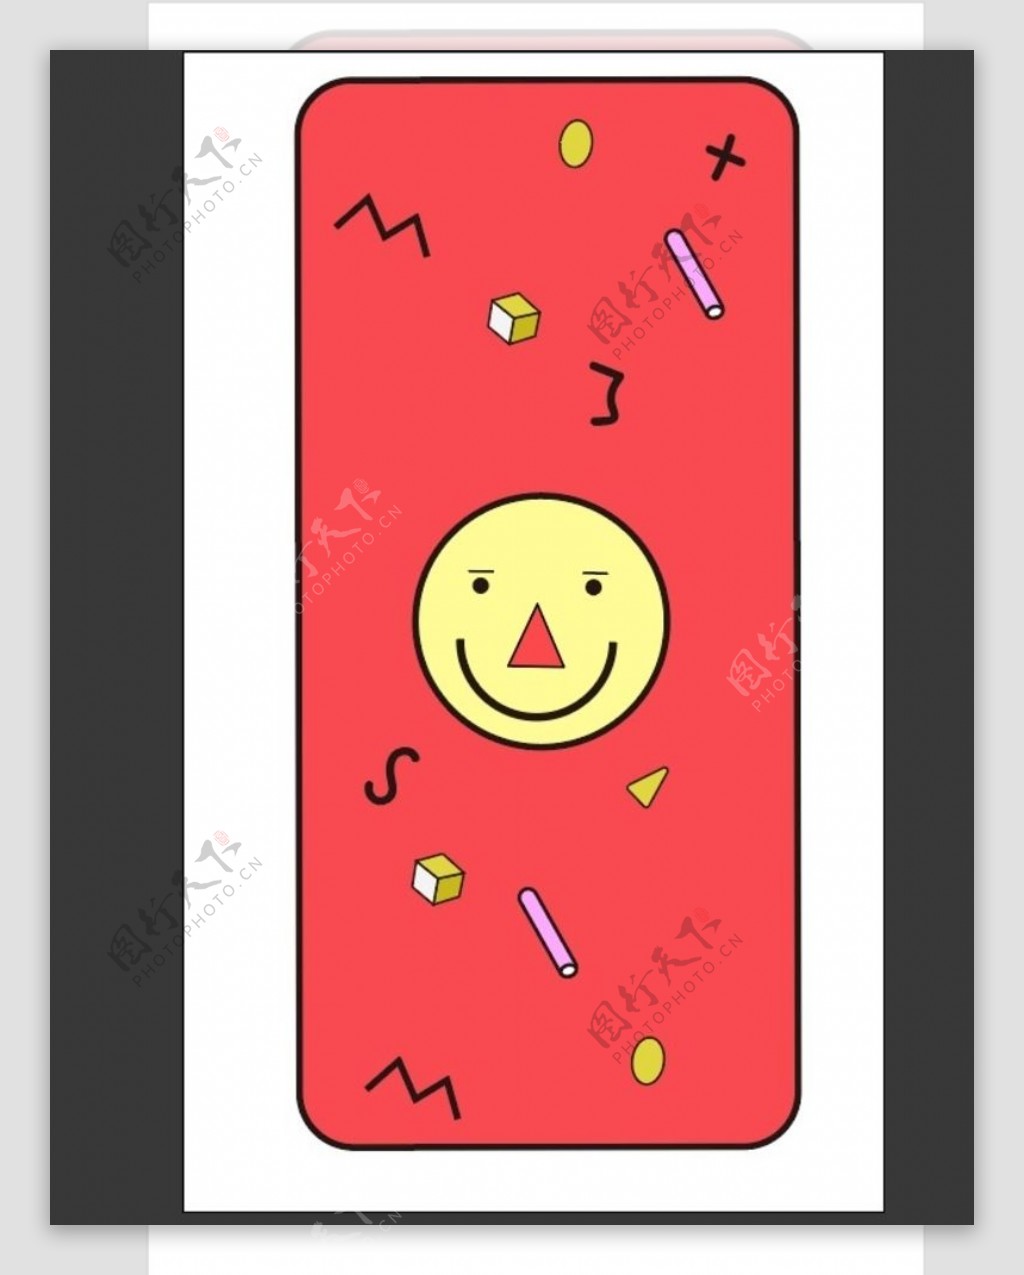 可爱的笑脸手机壳图案设计